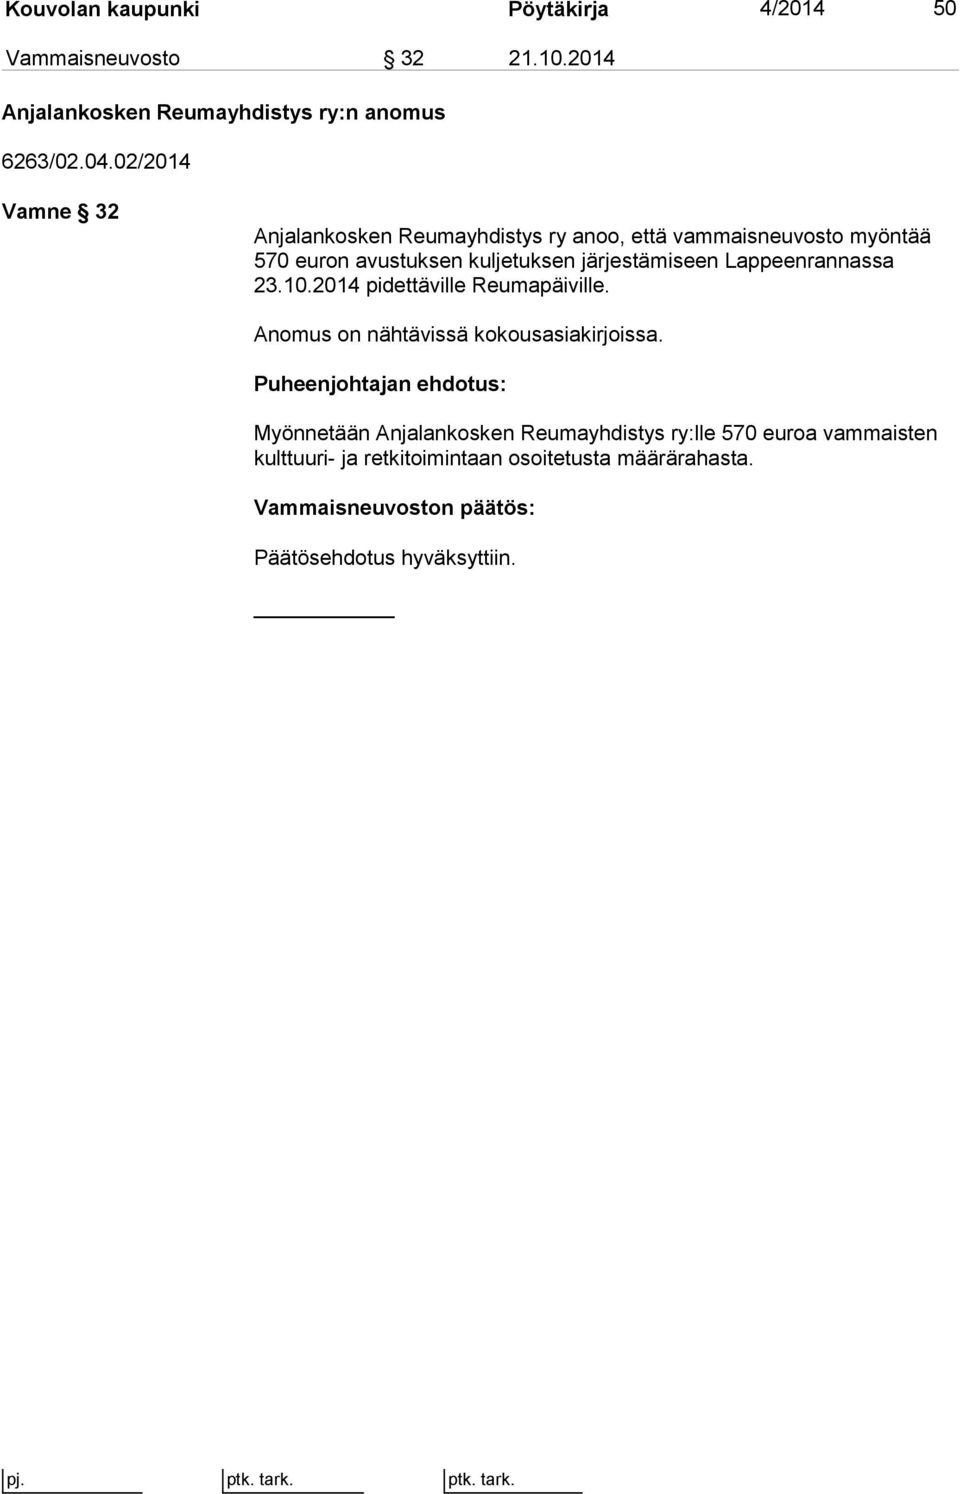 järjestämiseen Lappeenrannassa 23.10.2014 pidettäville Reumapäiville. Anomus on nähtävissä kokousasiakirjoissa.